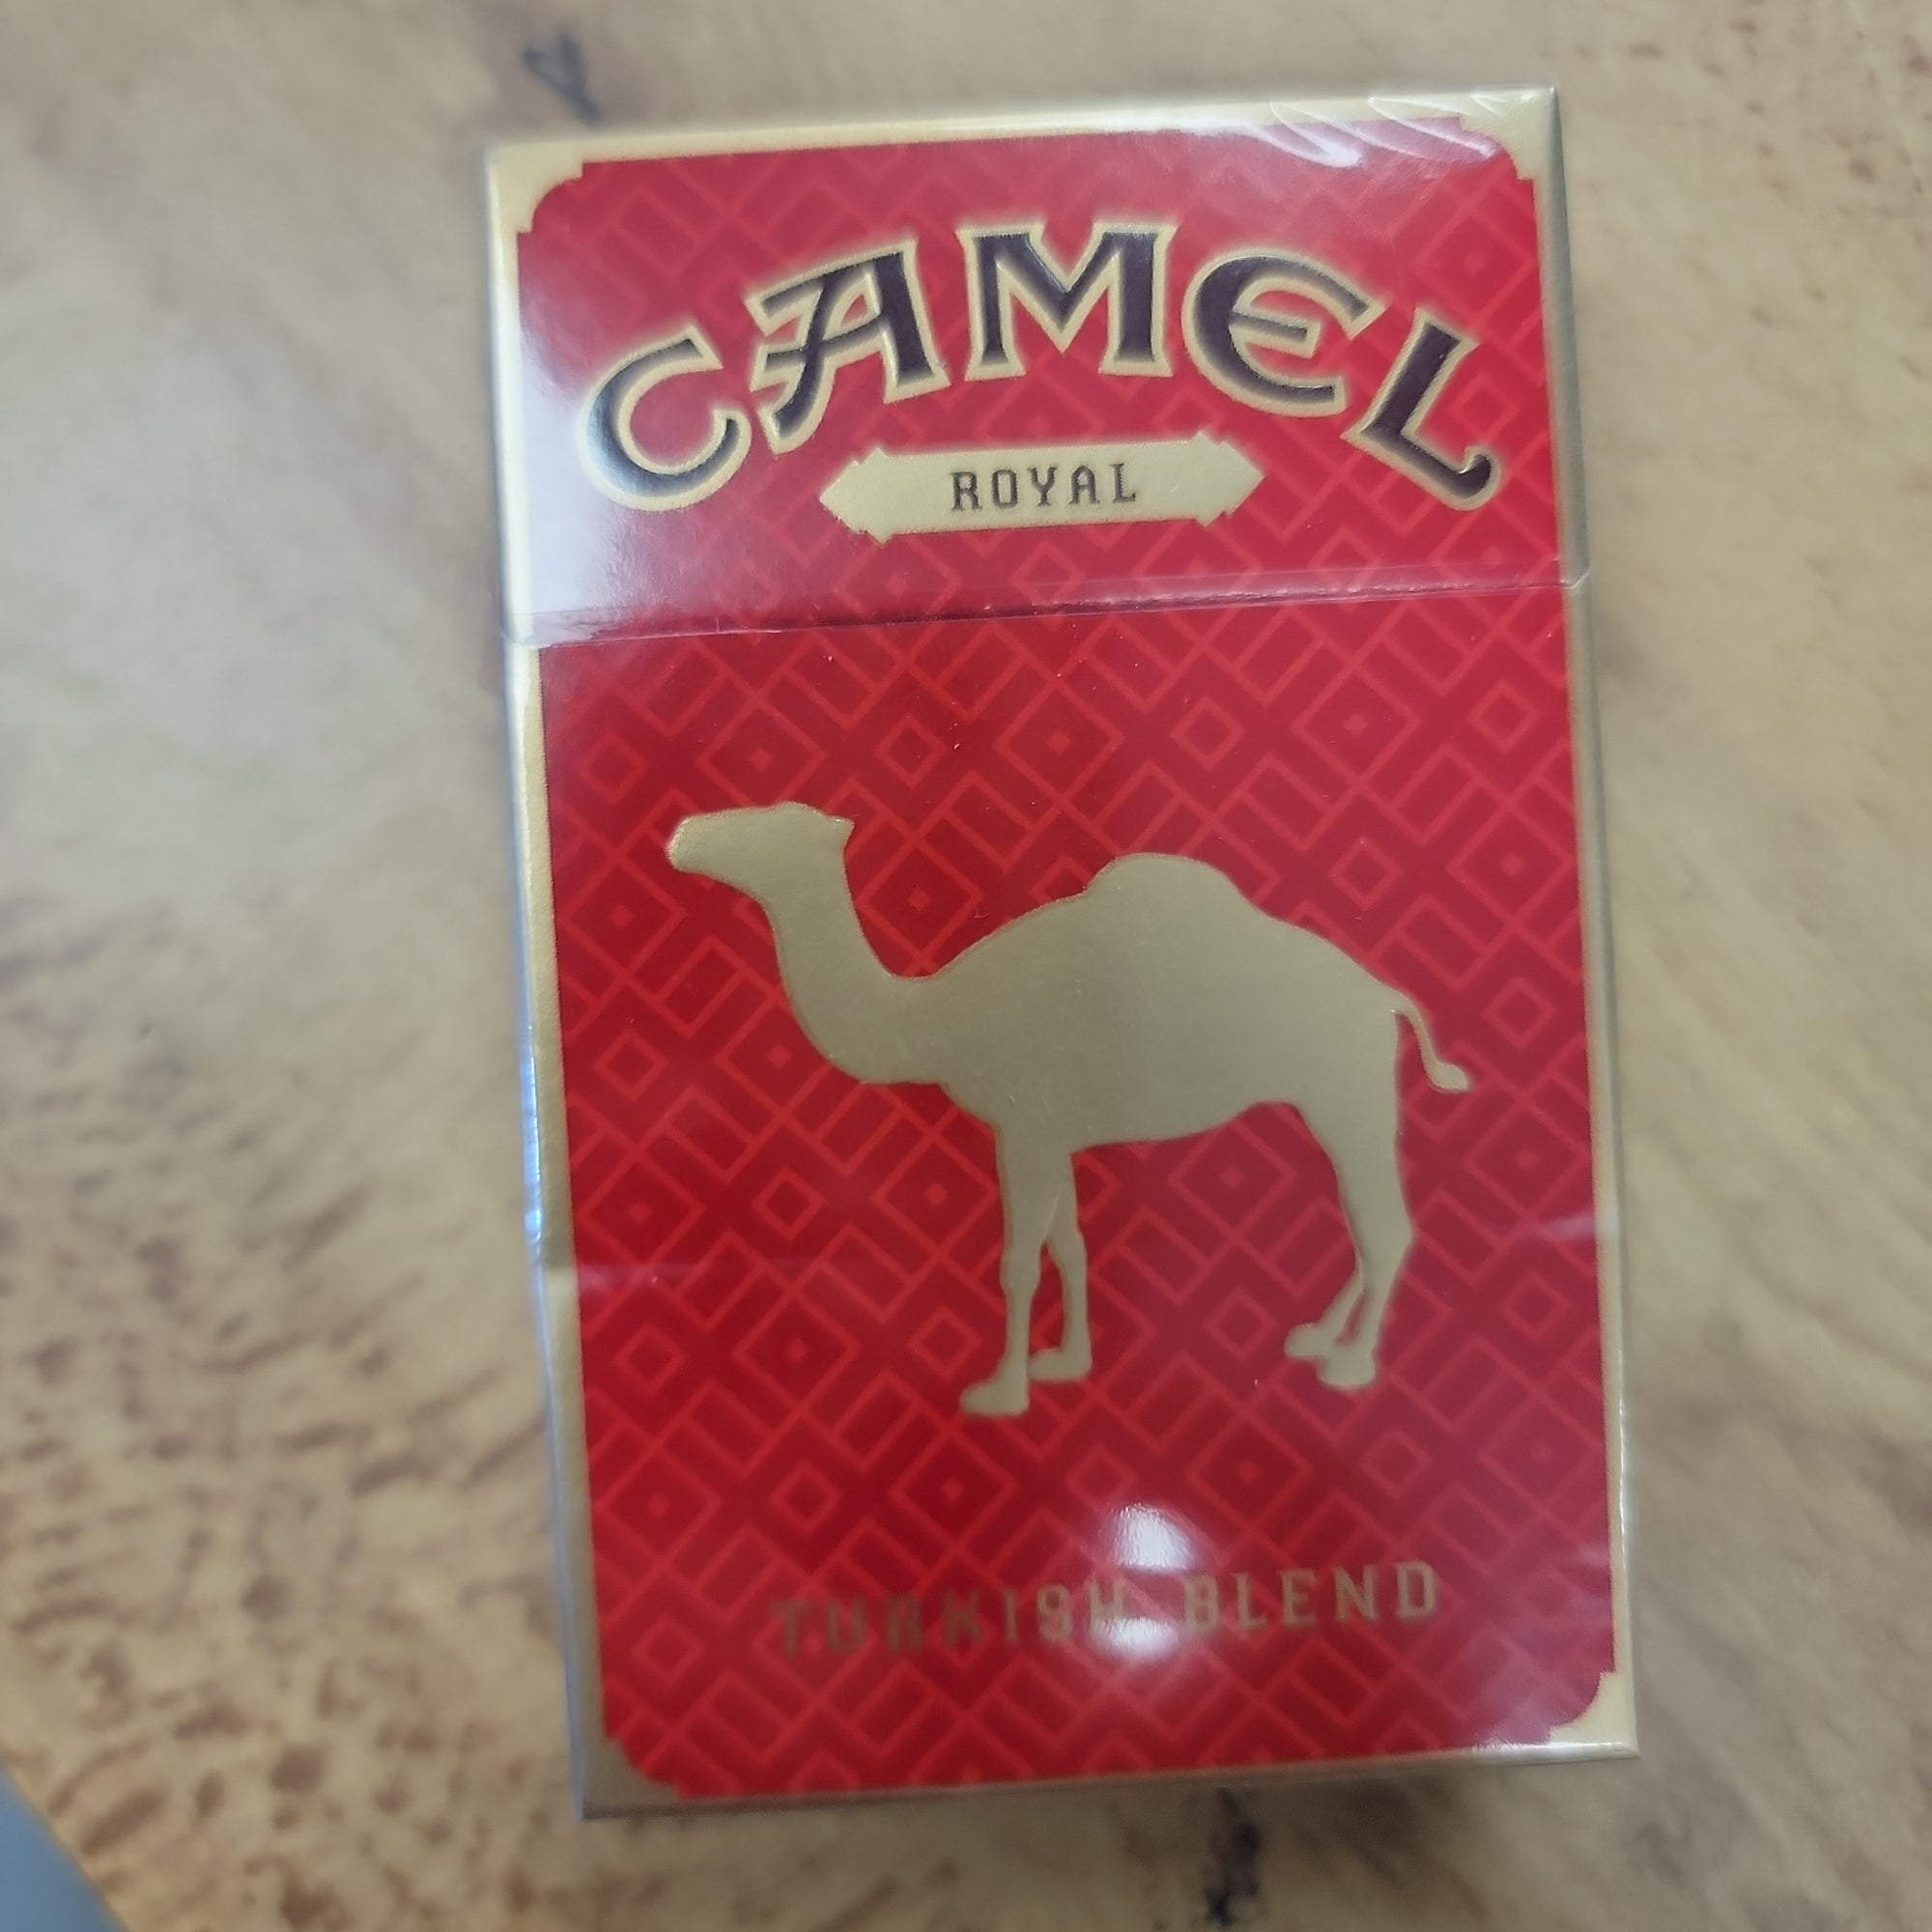 Camel royal turk blend